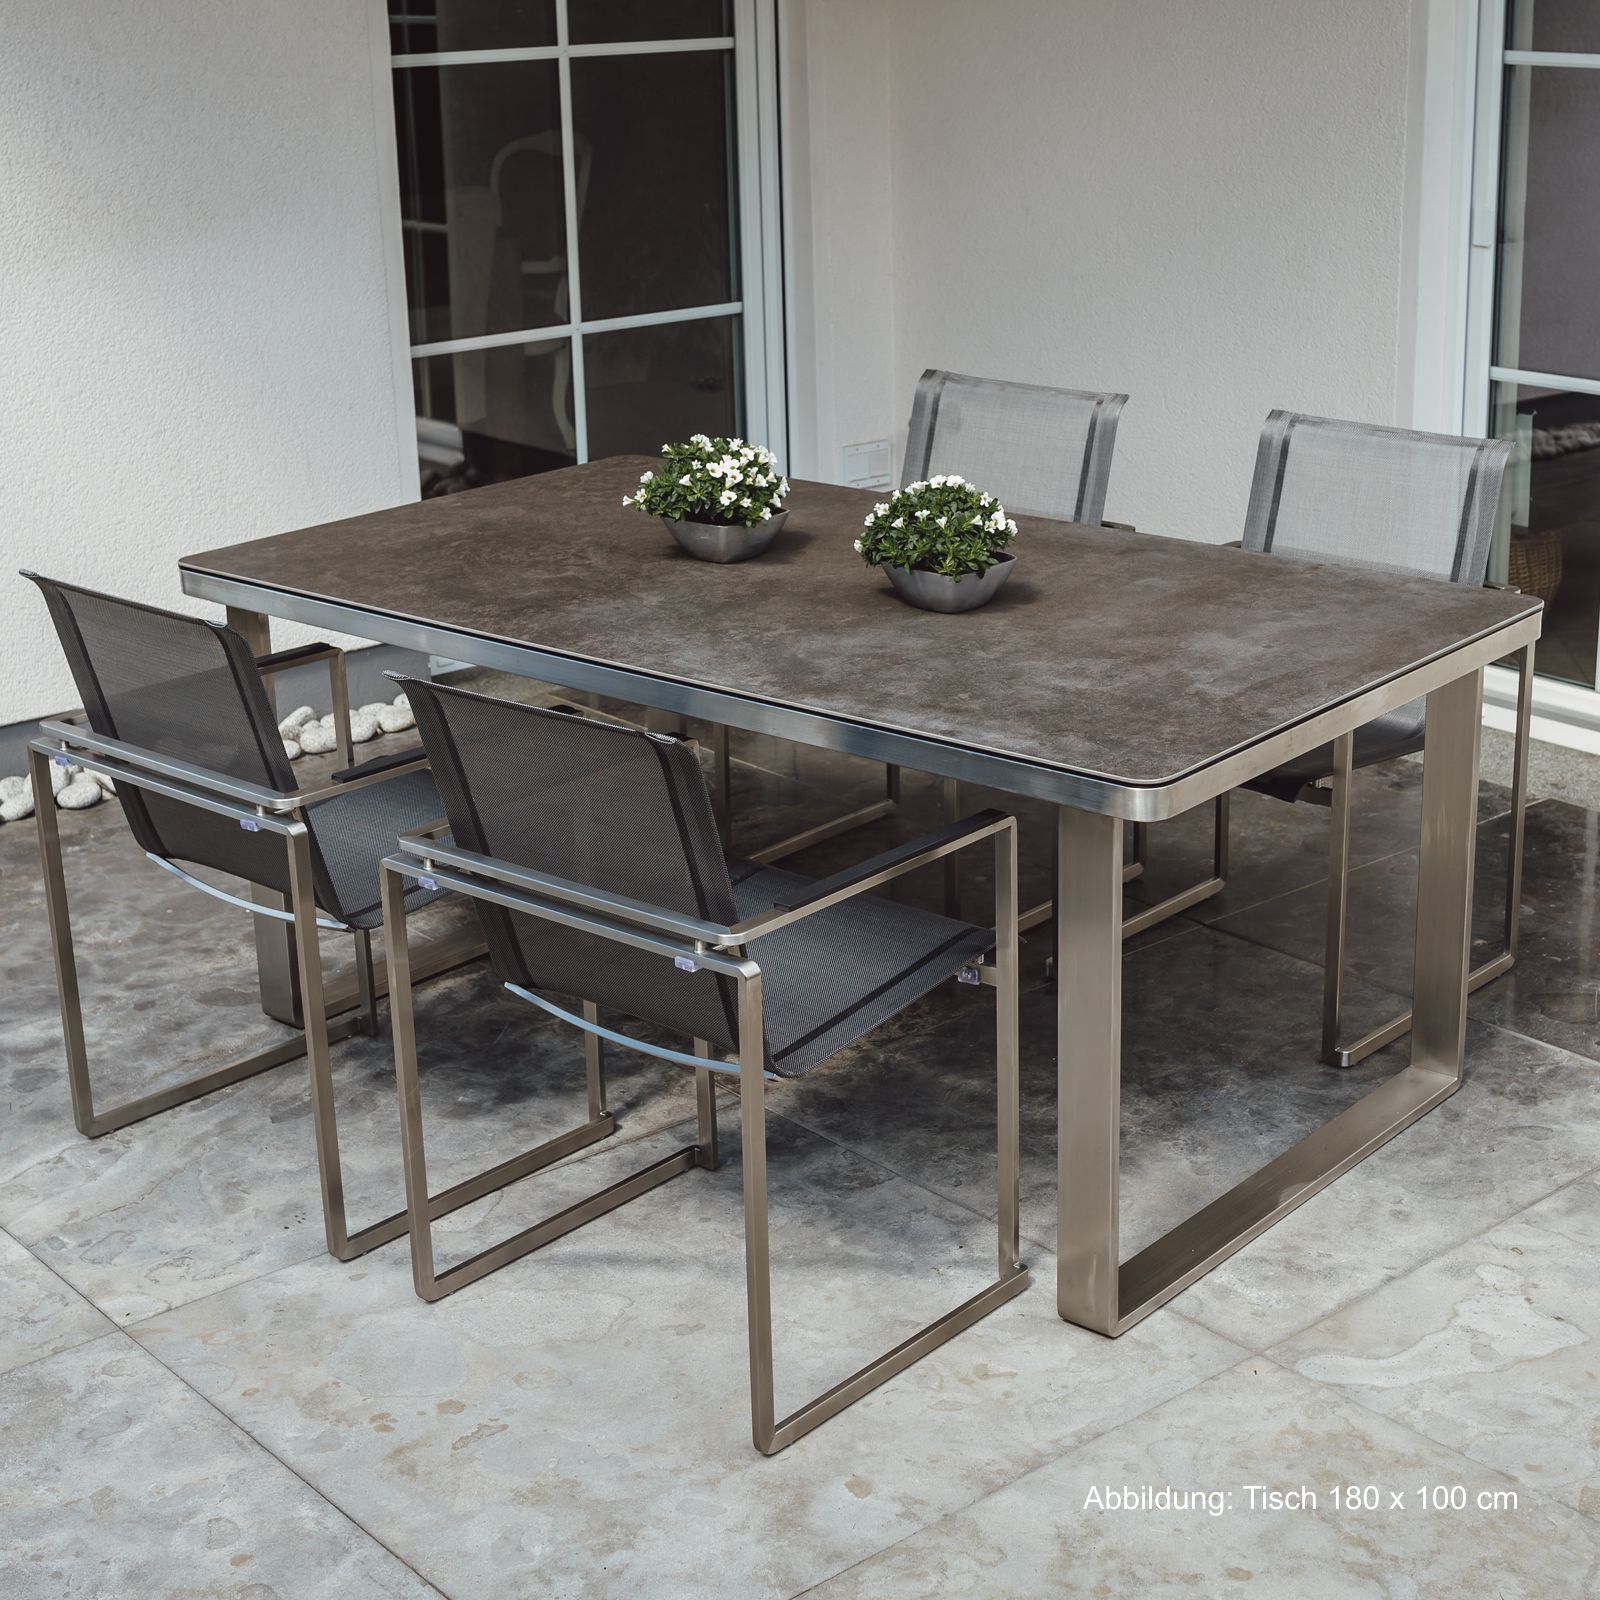 Tuinmeubelset: 4 stoelen en 1 tafel in roestvrij staal en glaskeramisch tafelblad